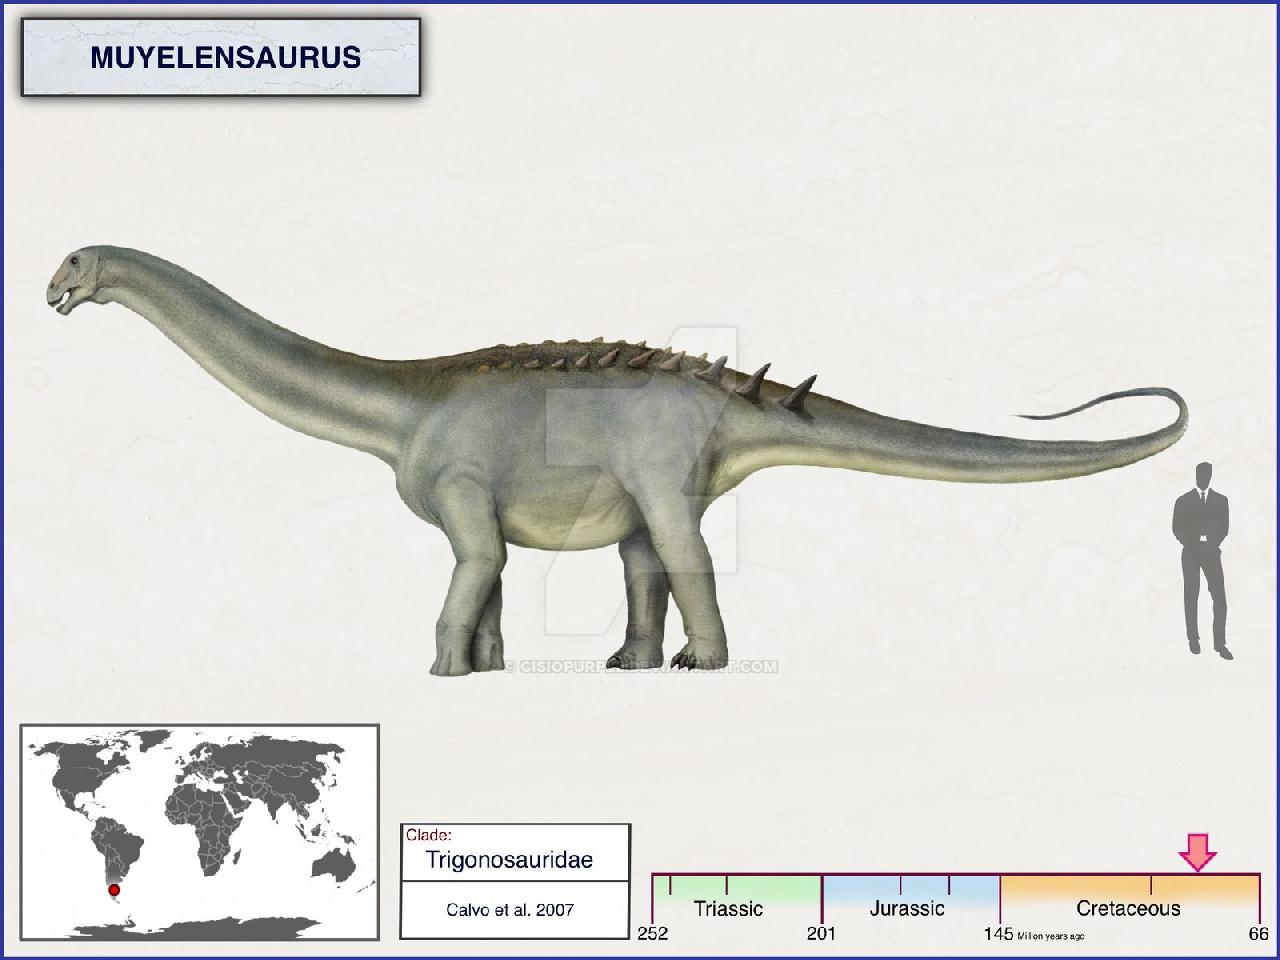 Muyelensaurus, Cretaceous
(Меловой период)